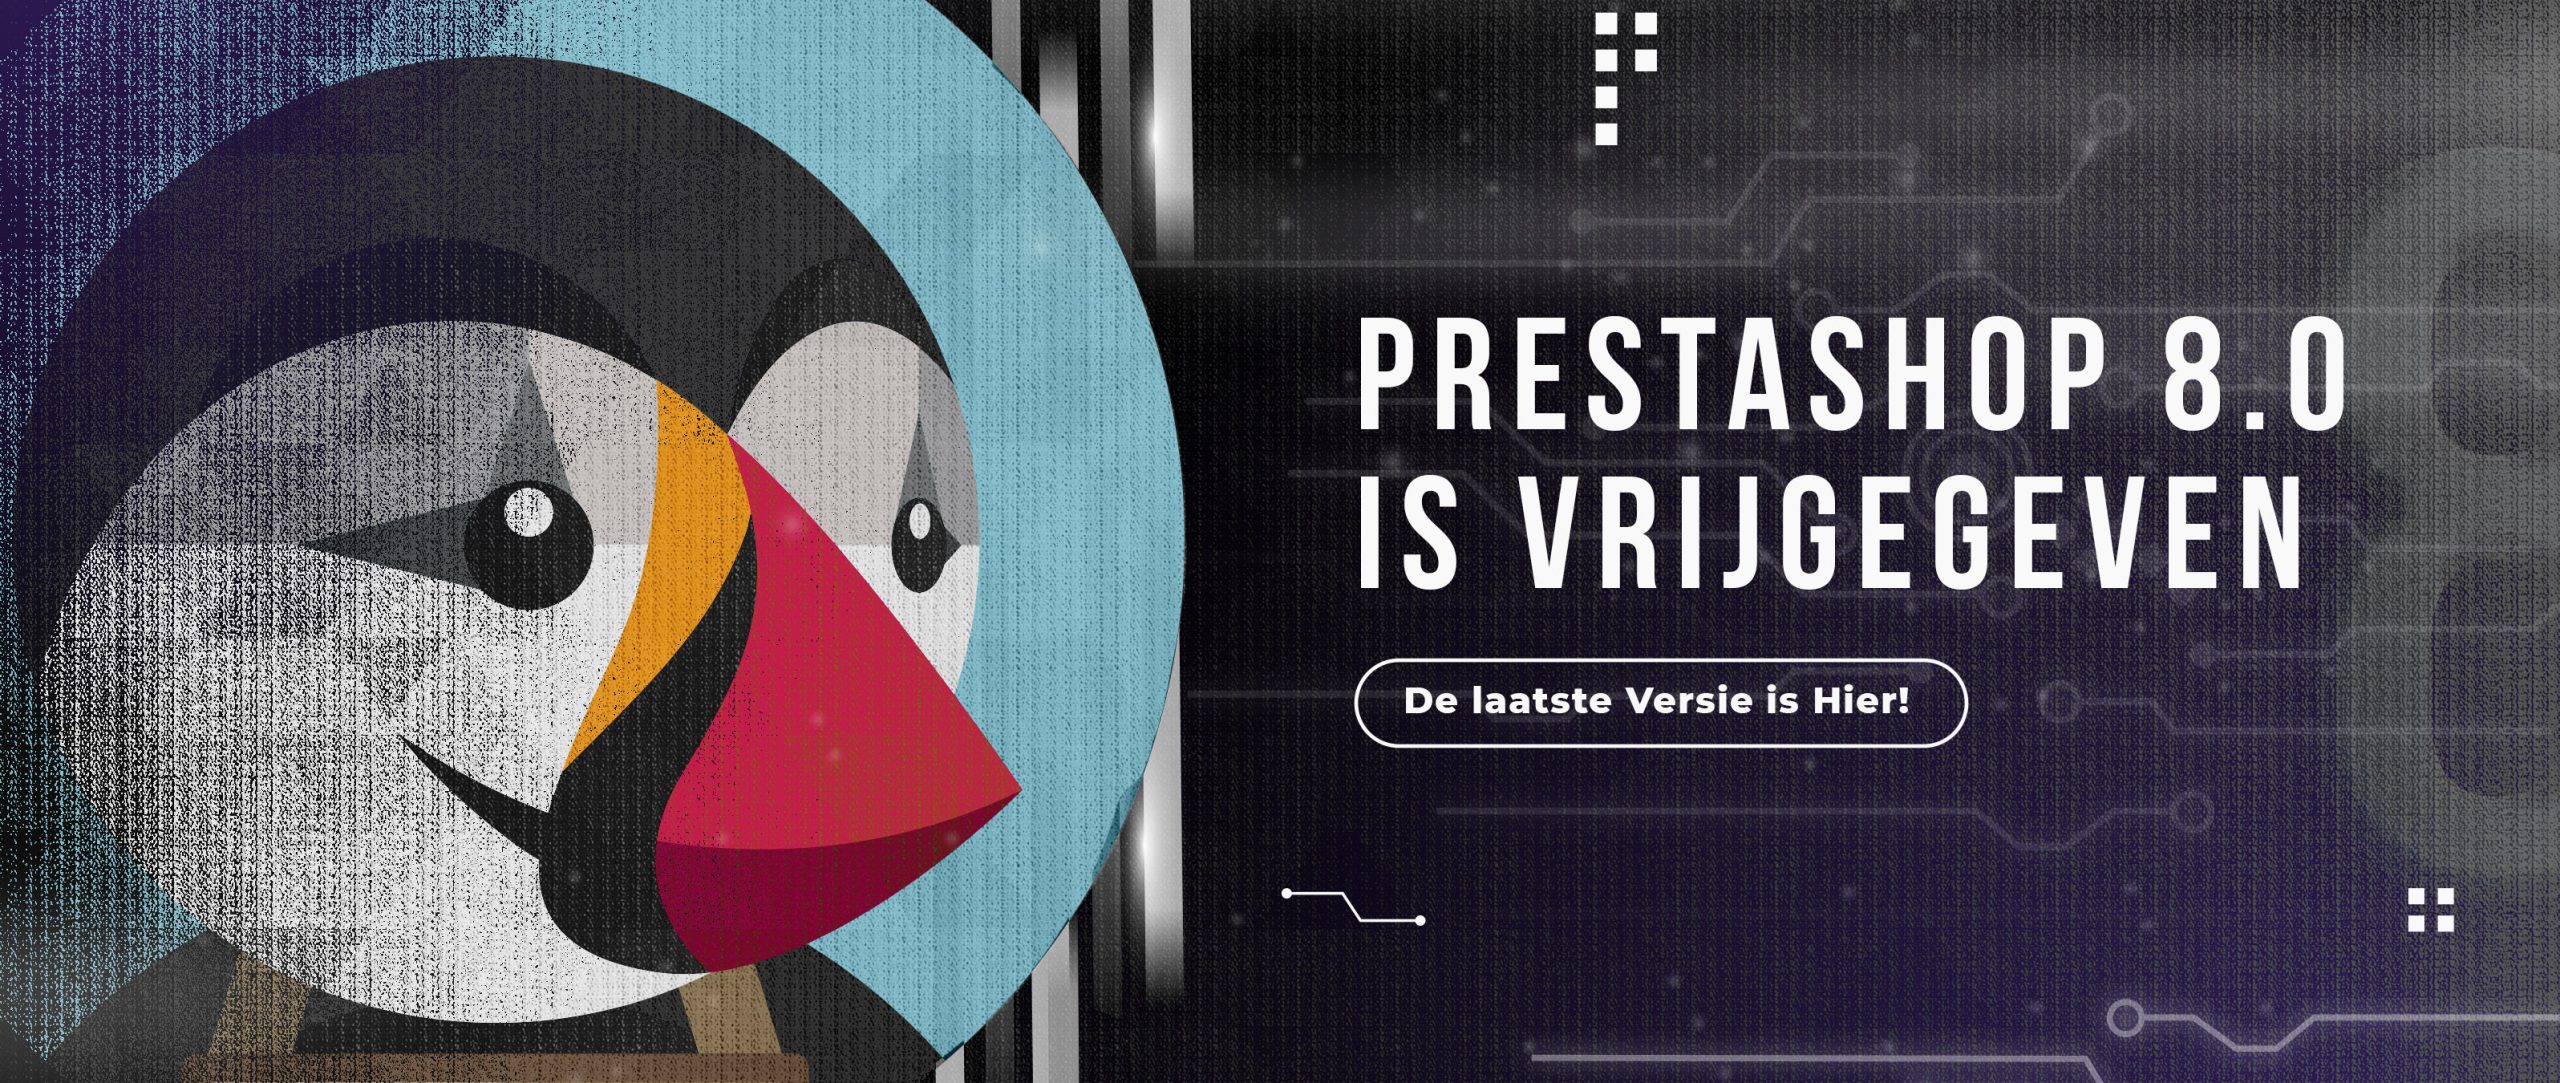 PrestaShop 8.0 is vrijgegeven (DE DEFINITIEVE VERSIE IS NU BESCHIKBAAR!)